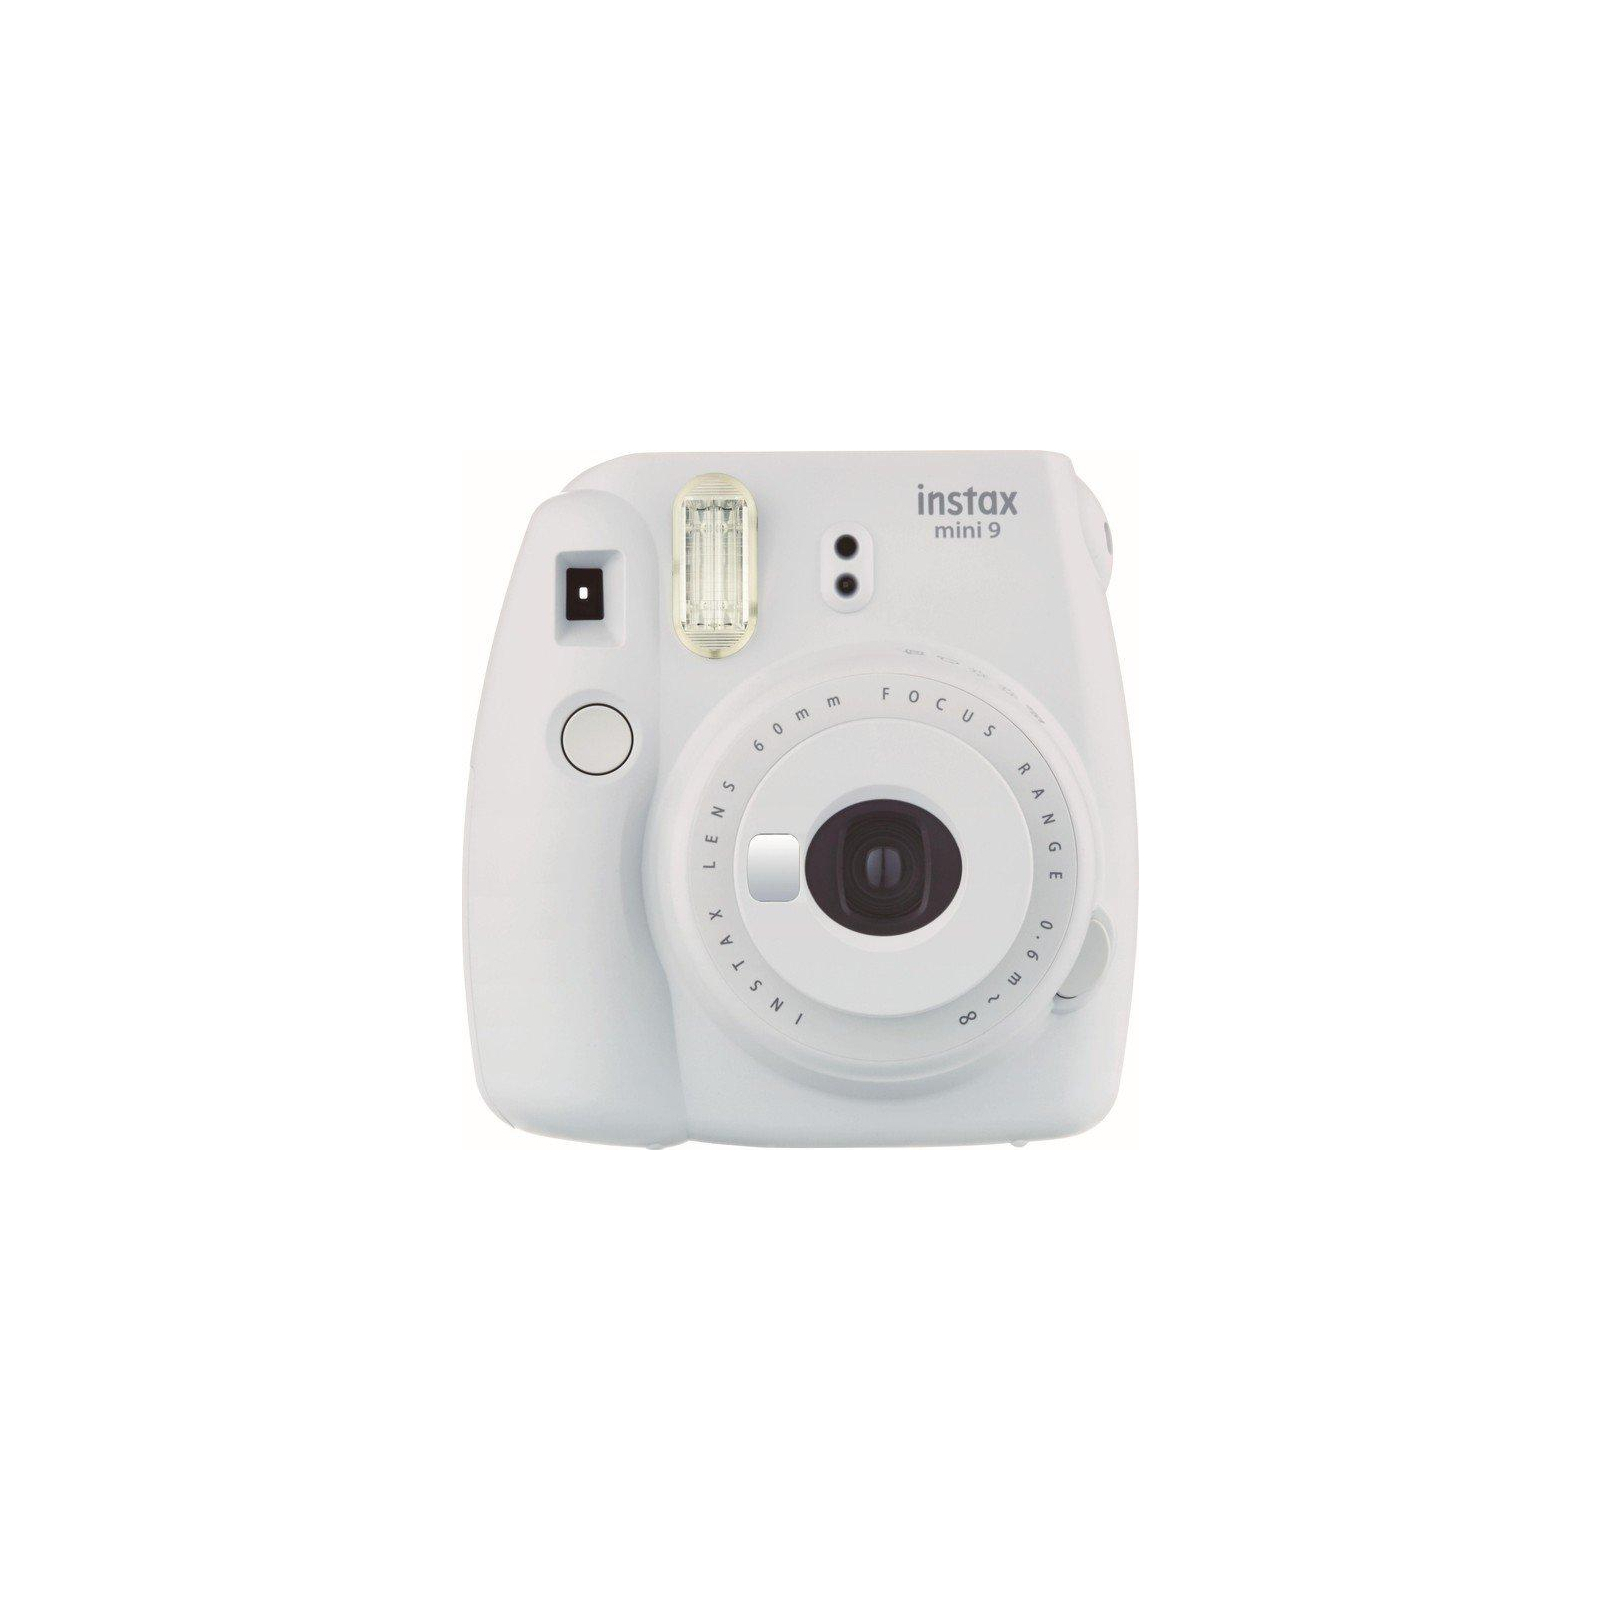 Камера миттєвого друку Fujifilm Instax Mini 9 CAMERA LIM GREEN TH EX D (16550708) зображення 2